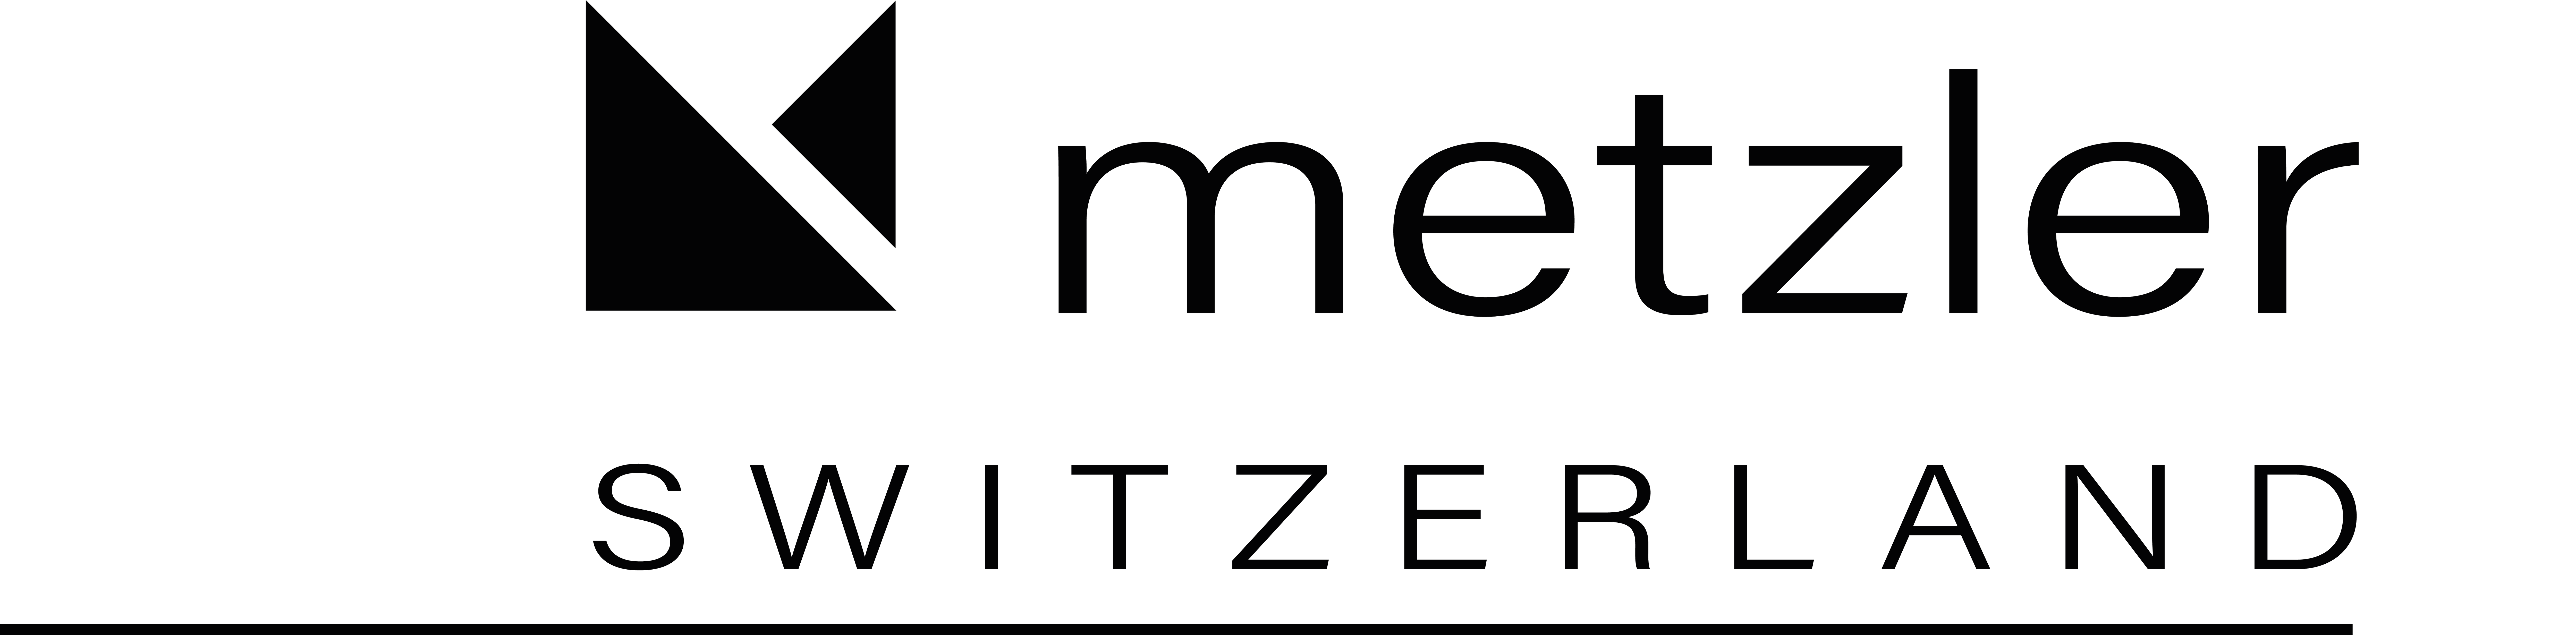 metzler logo 2020